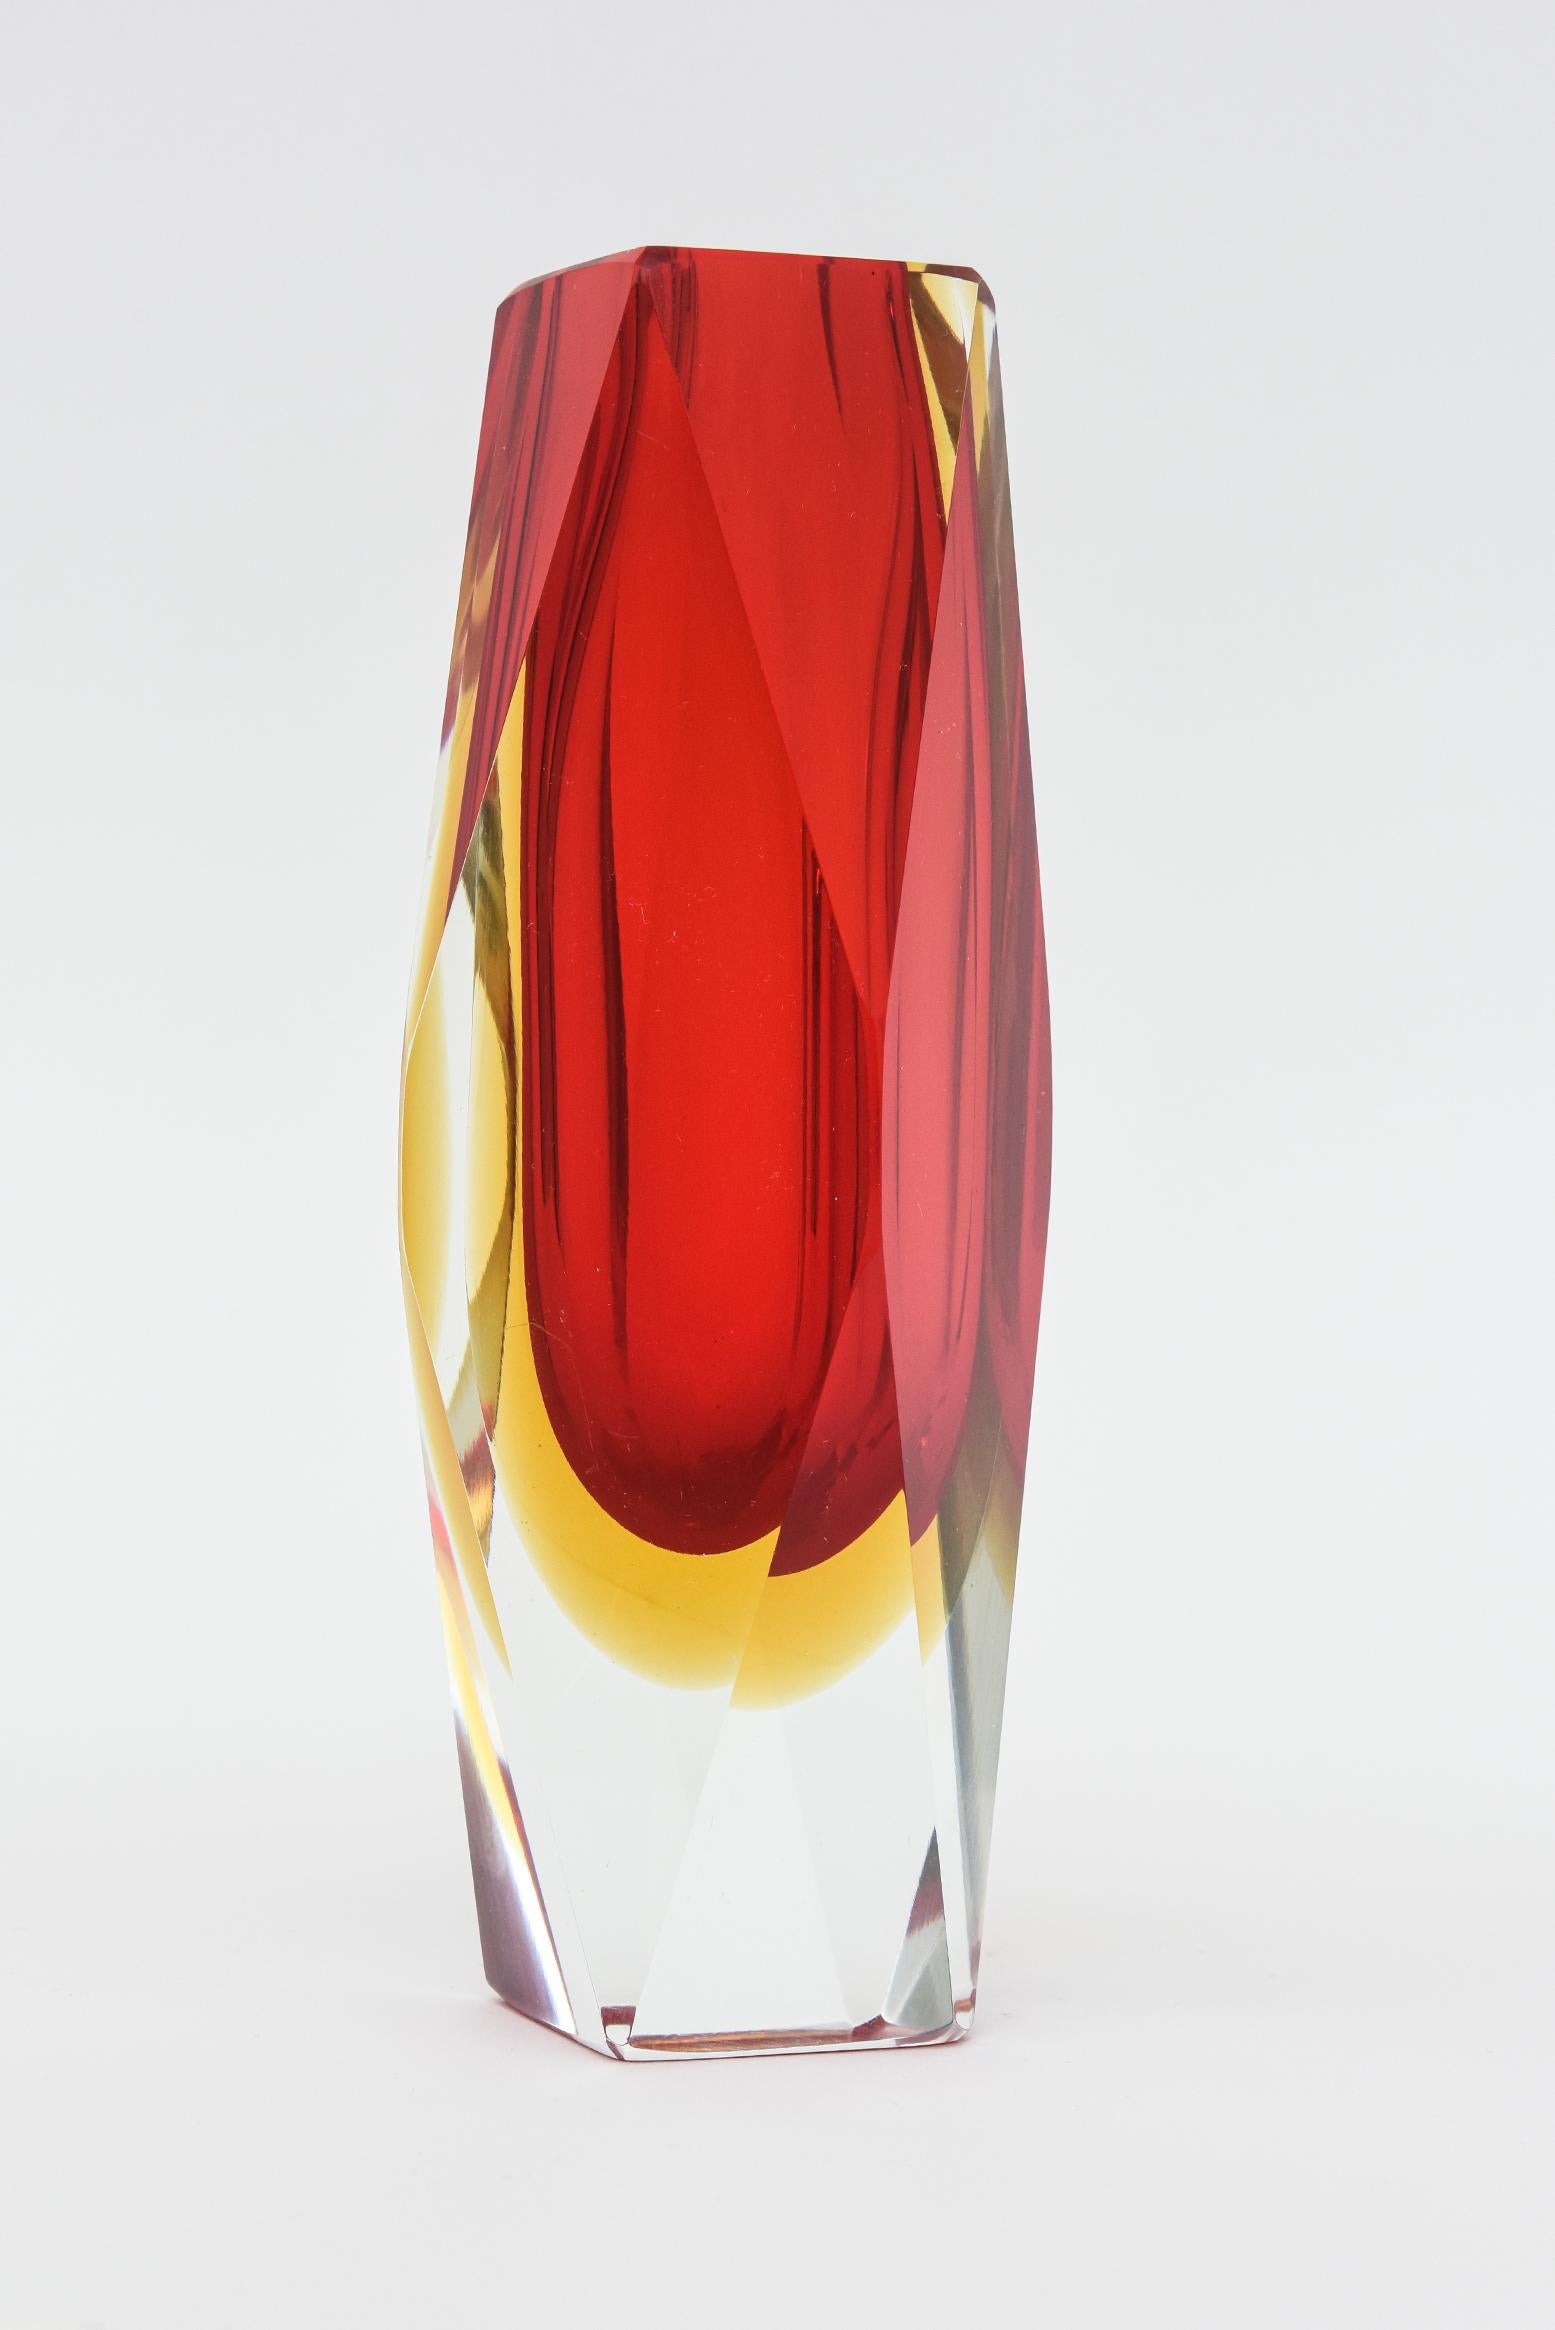 Ce magnifique vase vintage en verre de Murano, réalisé par Alessandro Mandruzzato, présente la stratification Sommerso de verre facetté rouge et jaune avec une base transparente. Italien, soufflé à la main et datant des années 70. Ce sont des